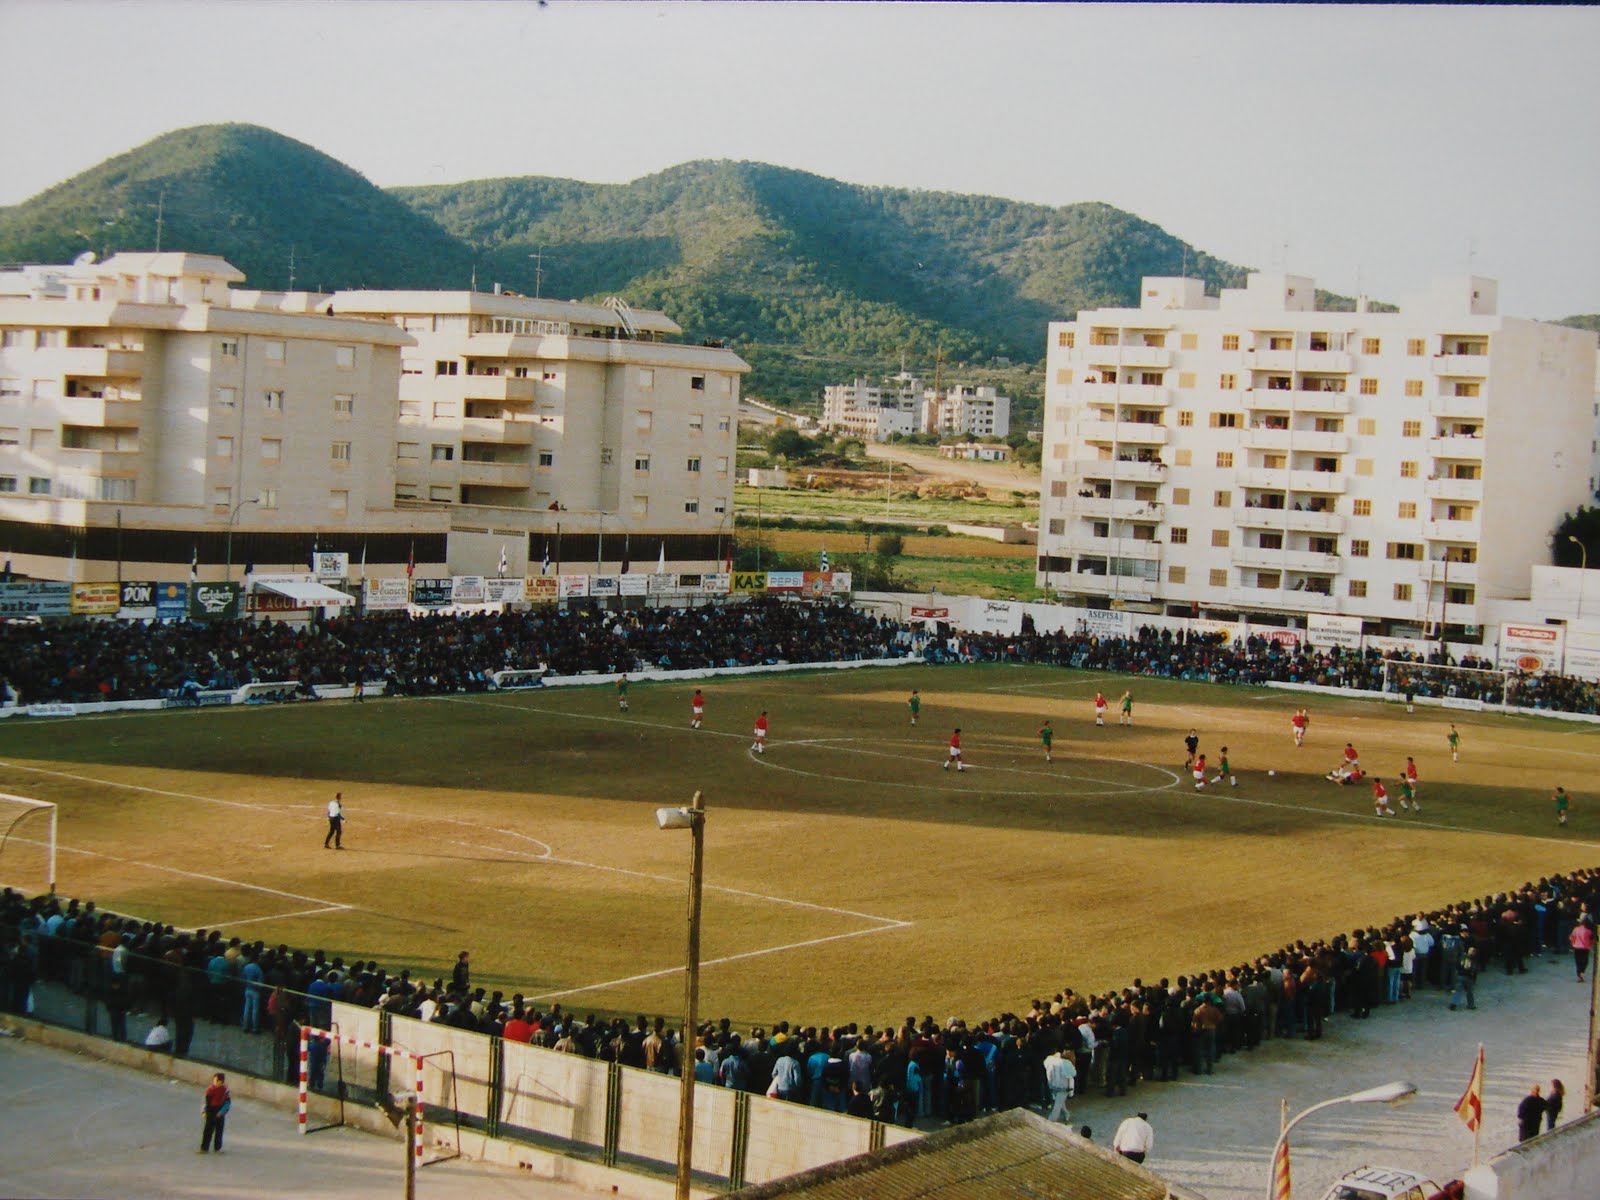 El campo de fútbol de la calle Canarias siempre se llenaba de espectadores cuando jugaba la SD Ibiza. En la imagen puede apreciarse el ambientazo que se respiraba alrededor del terreno de juego, de hierba natural.